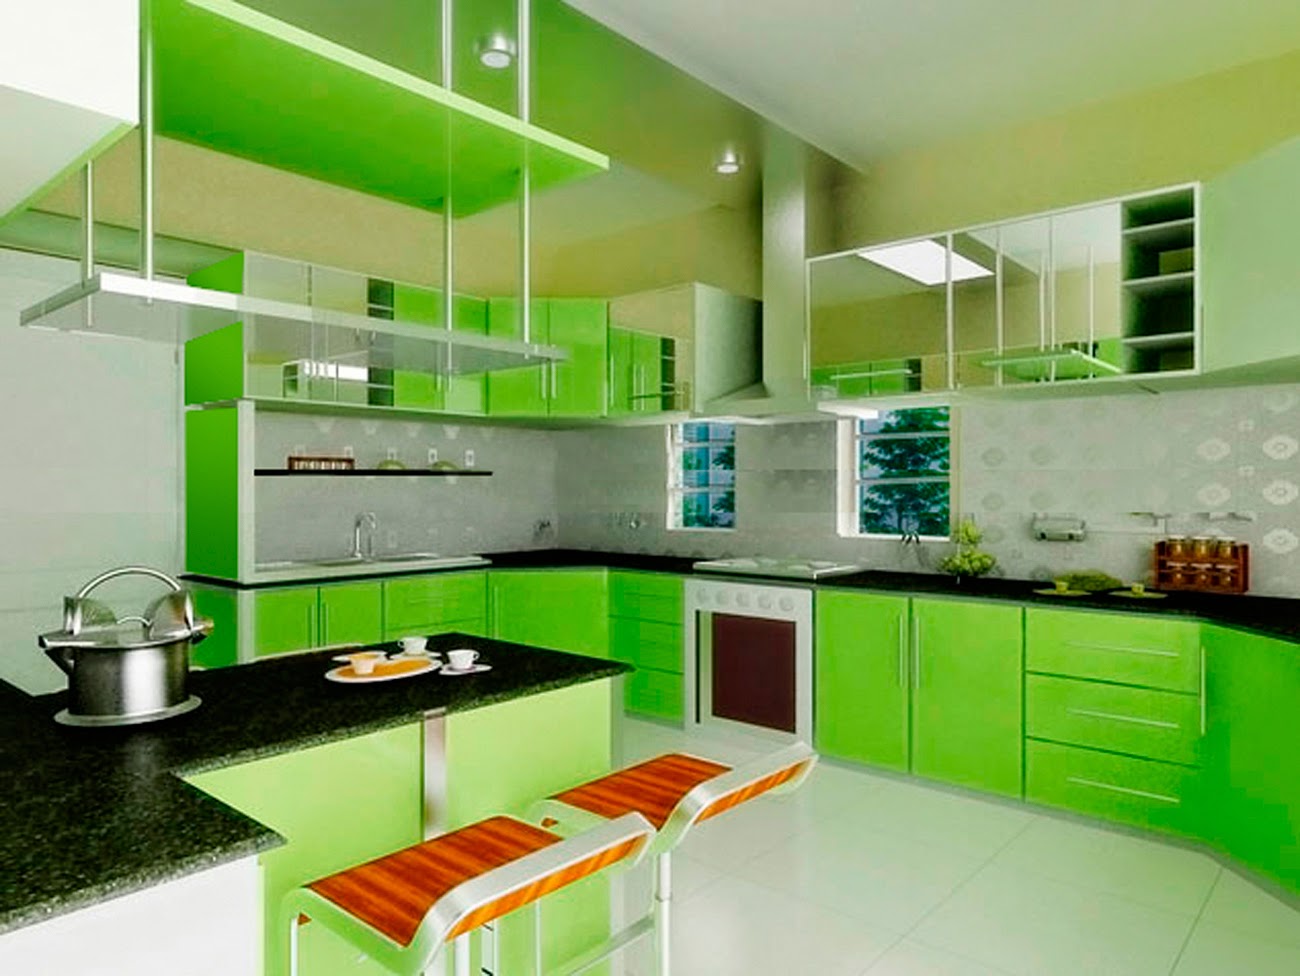   Pilihan Warna Cat Dapur Modern | Rumah Minimalis Sederhana